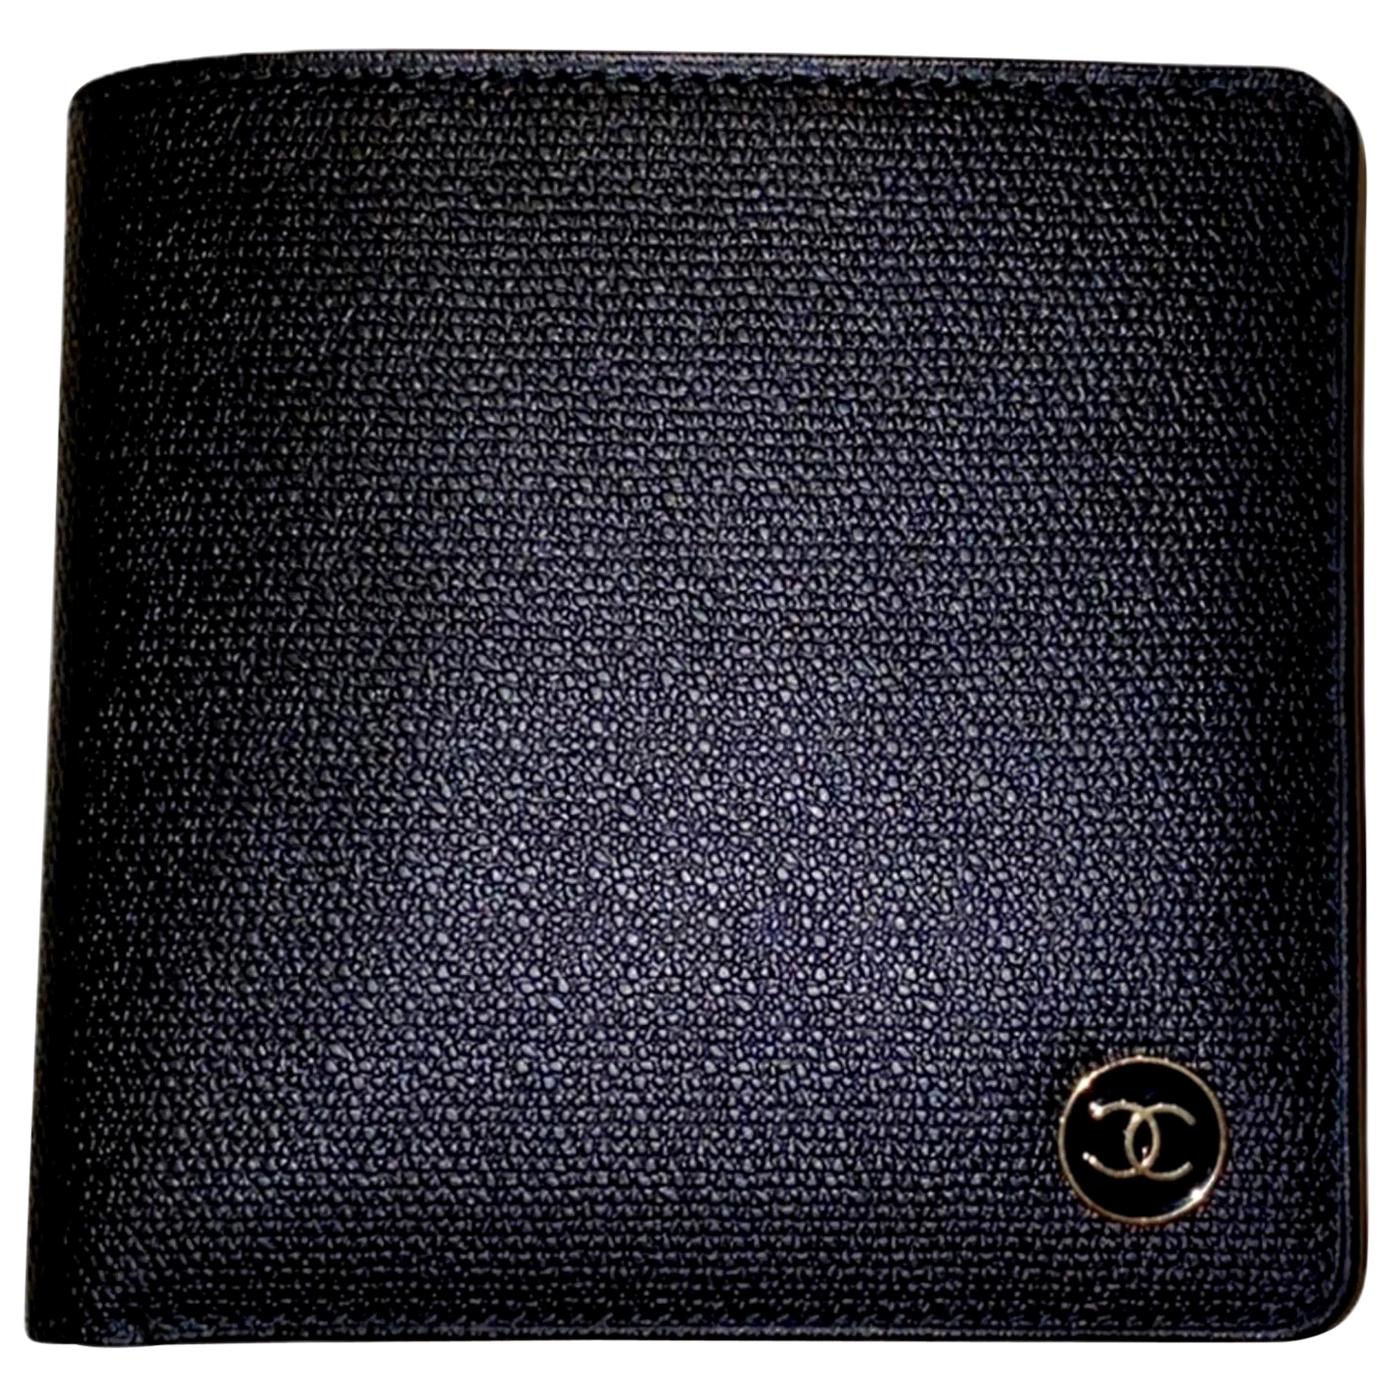 slids Æsel lejesoldat NEW Chanel Black CC Logo Flap Wallet - Full Set with Box and Card For Sale  at 1stDibs | chanel compact wallet, chanel bag, chanel card holder